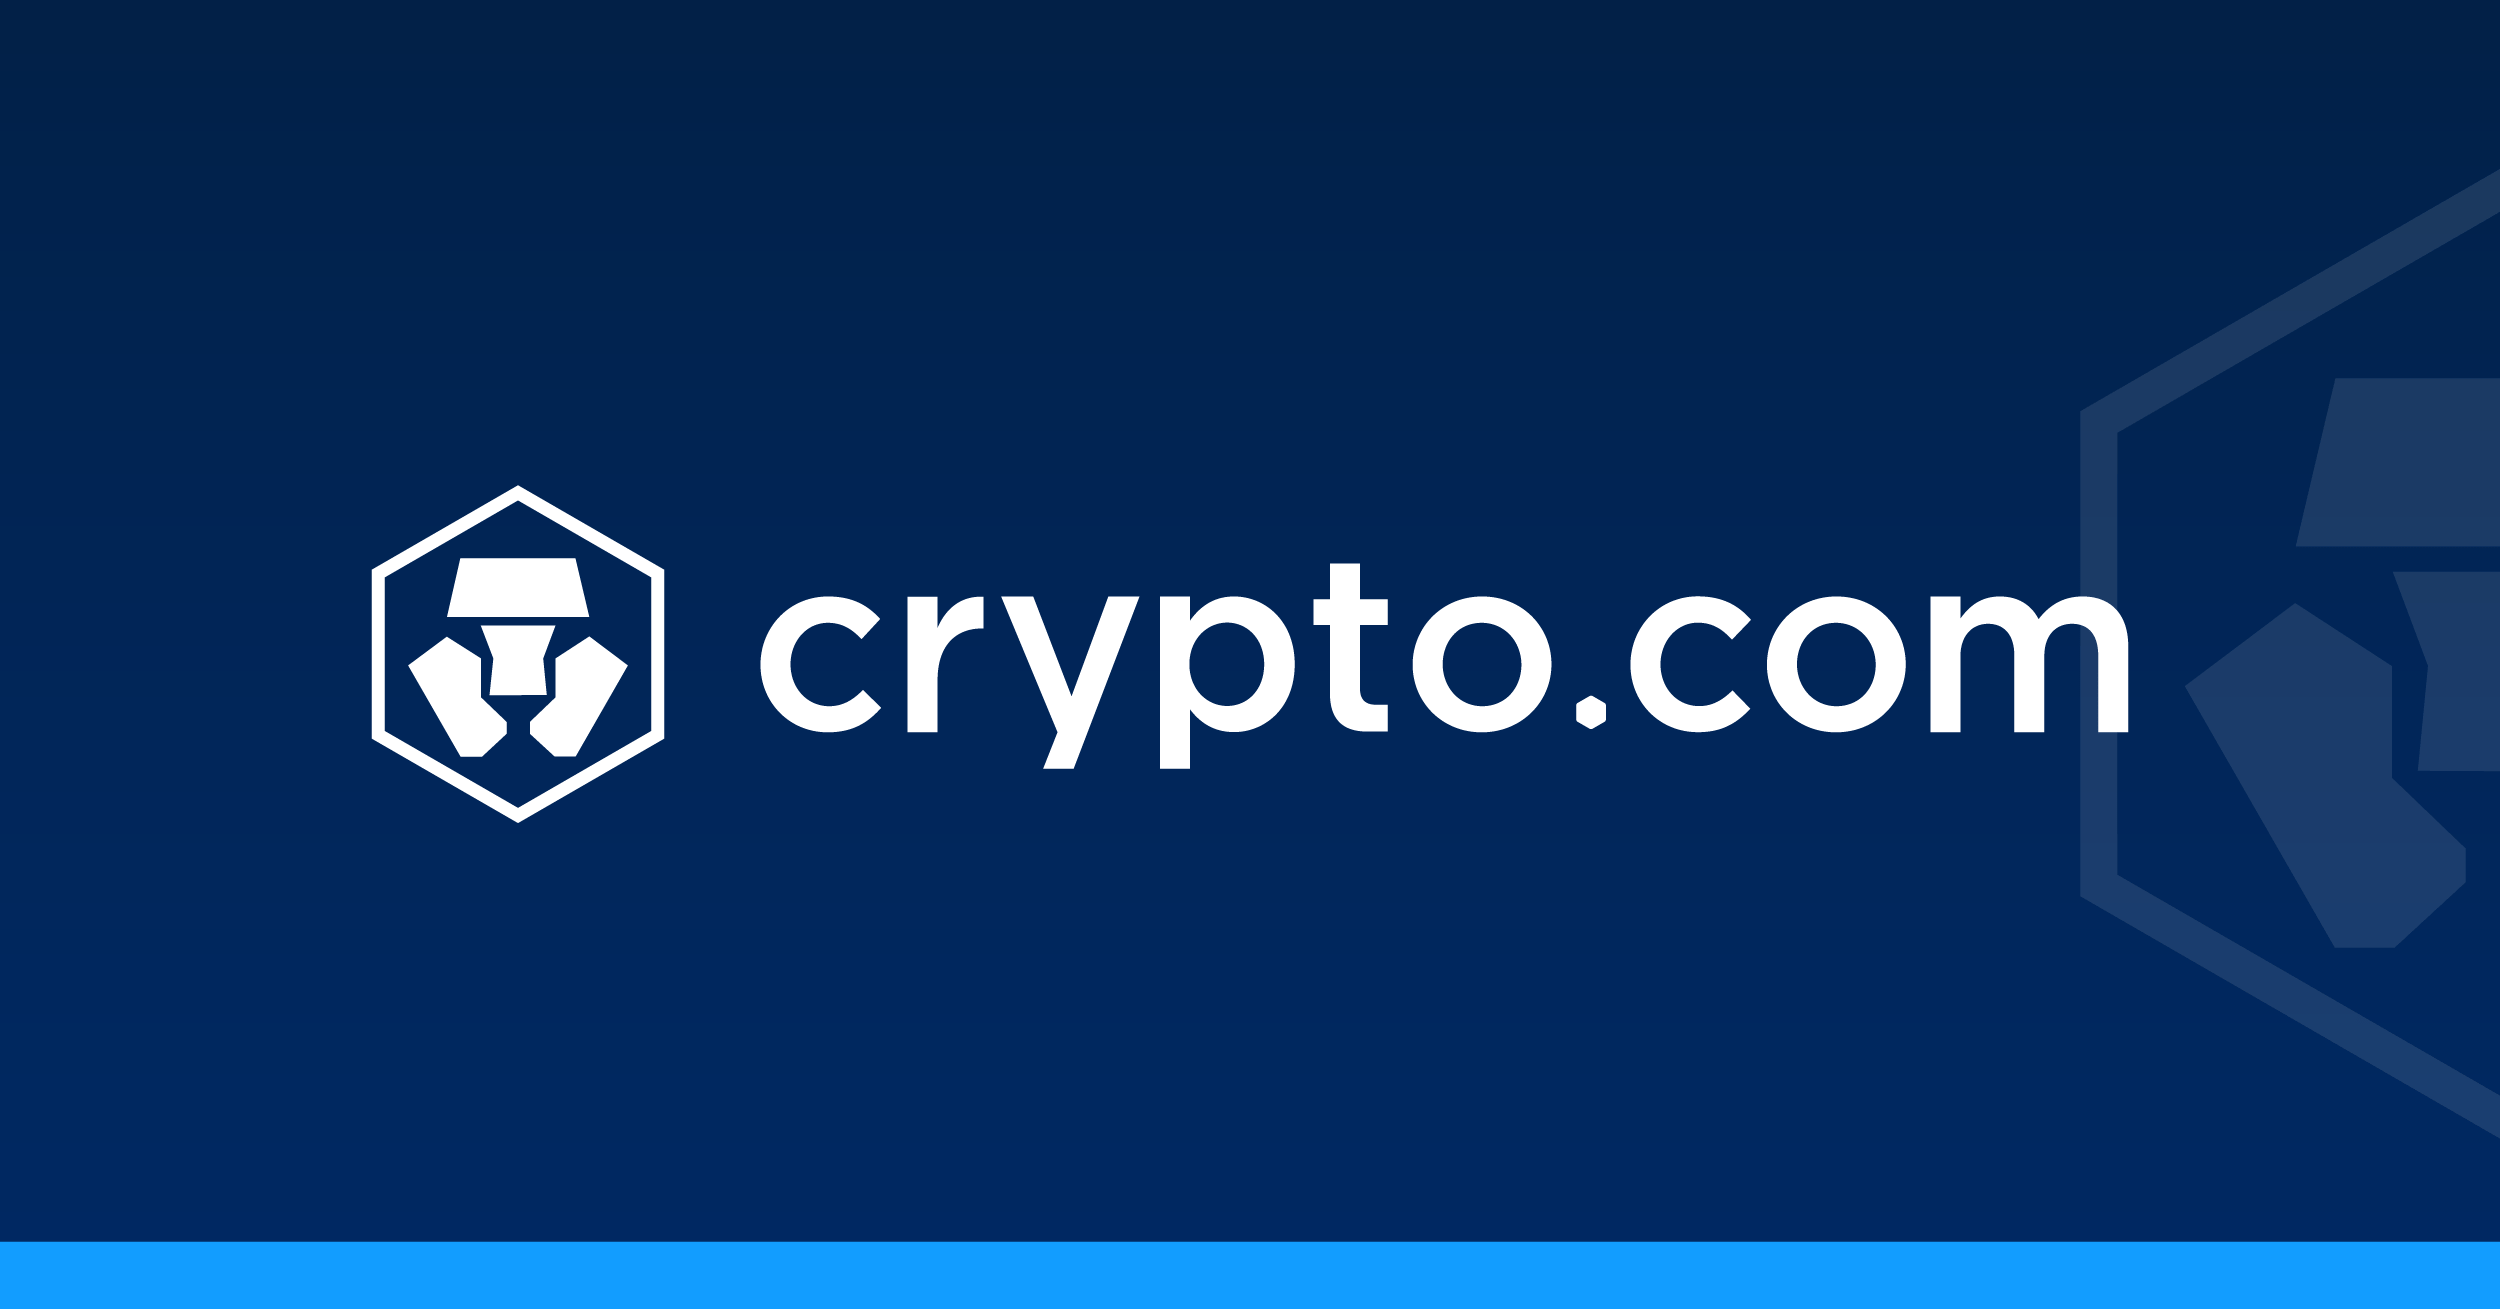 Playtcoin com. Crypto.com. Crypto.com logo. Crypto.com NFT. Crypto.com Coin (Cro).